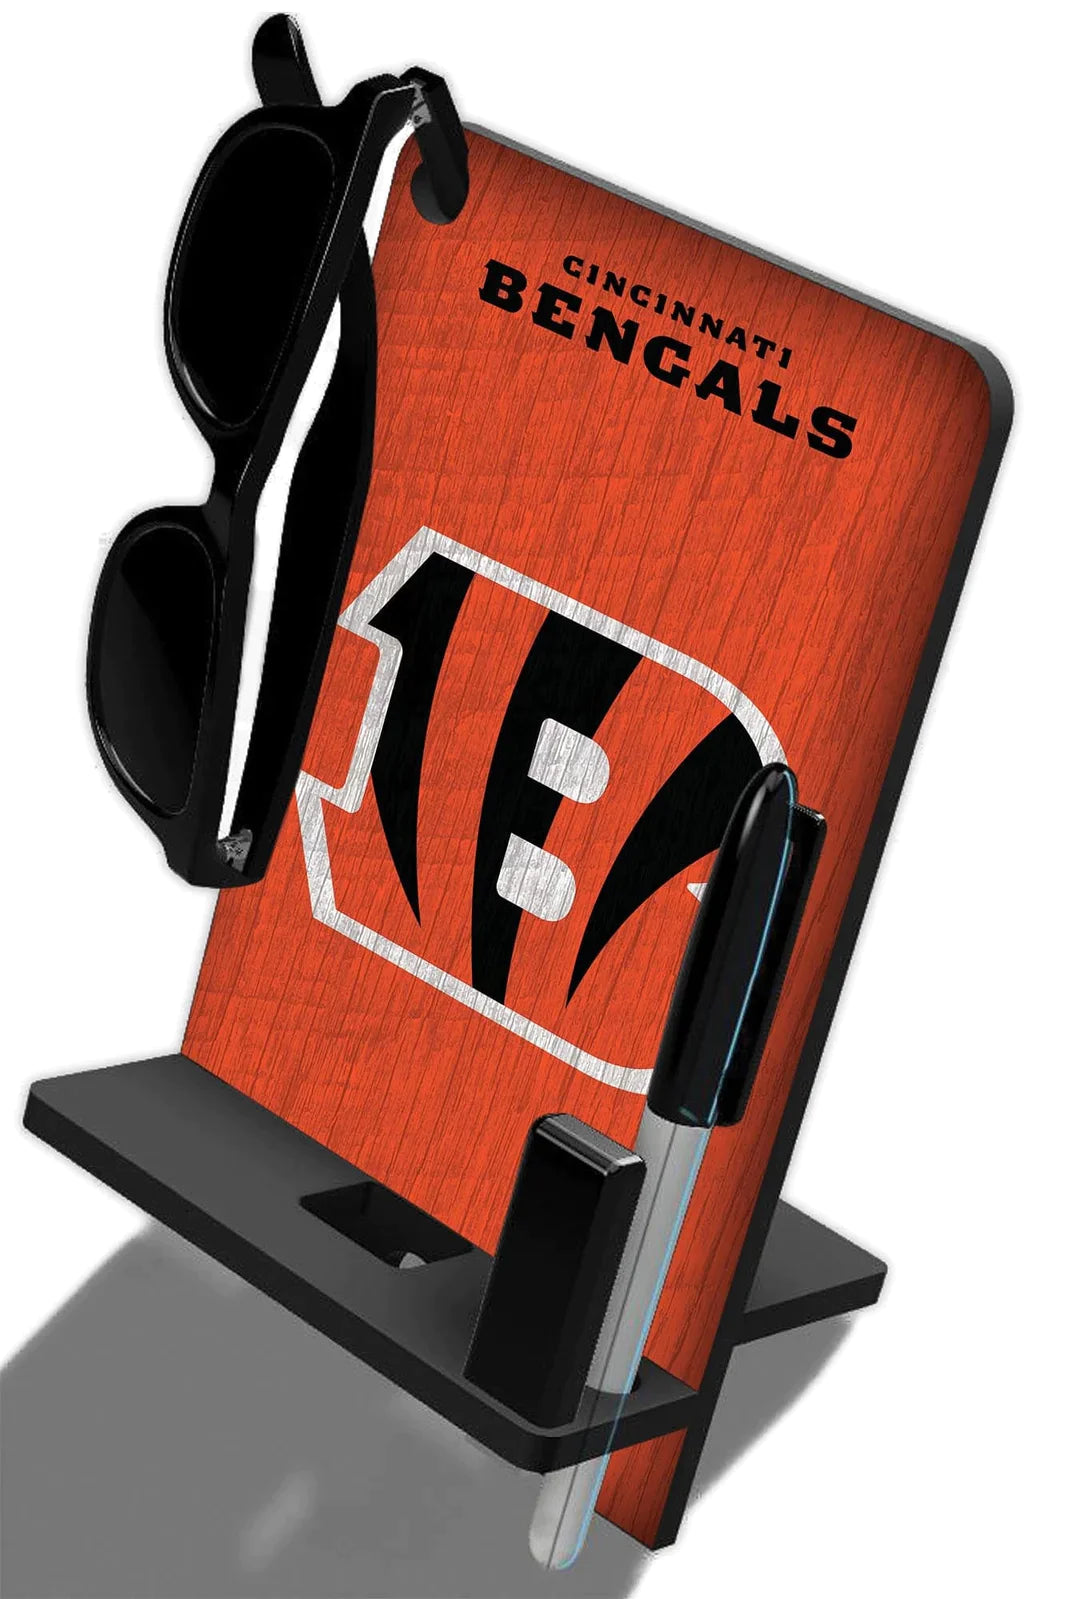 Base de escritorio para Celular Phone Stand NFL Bengals